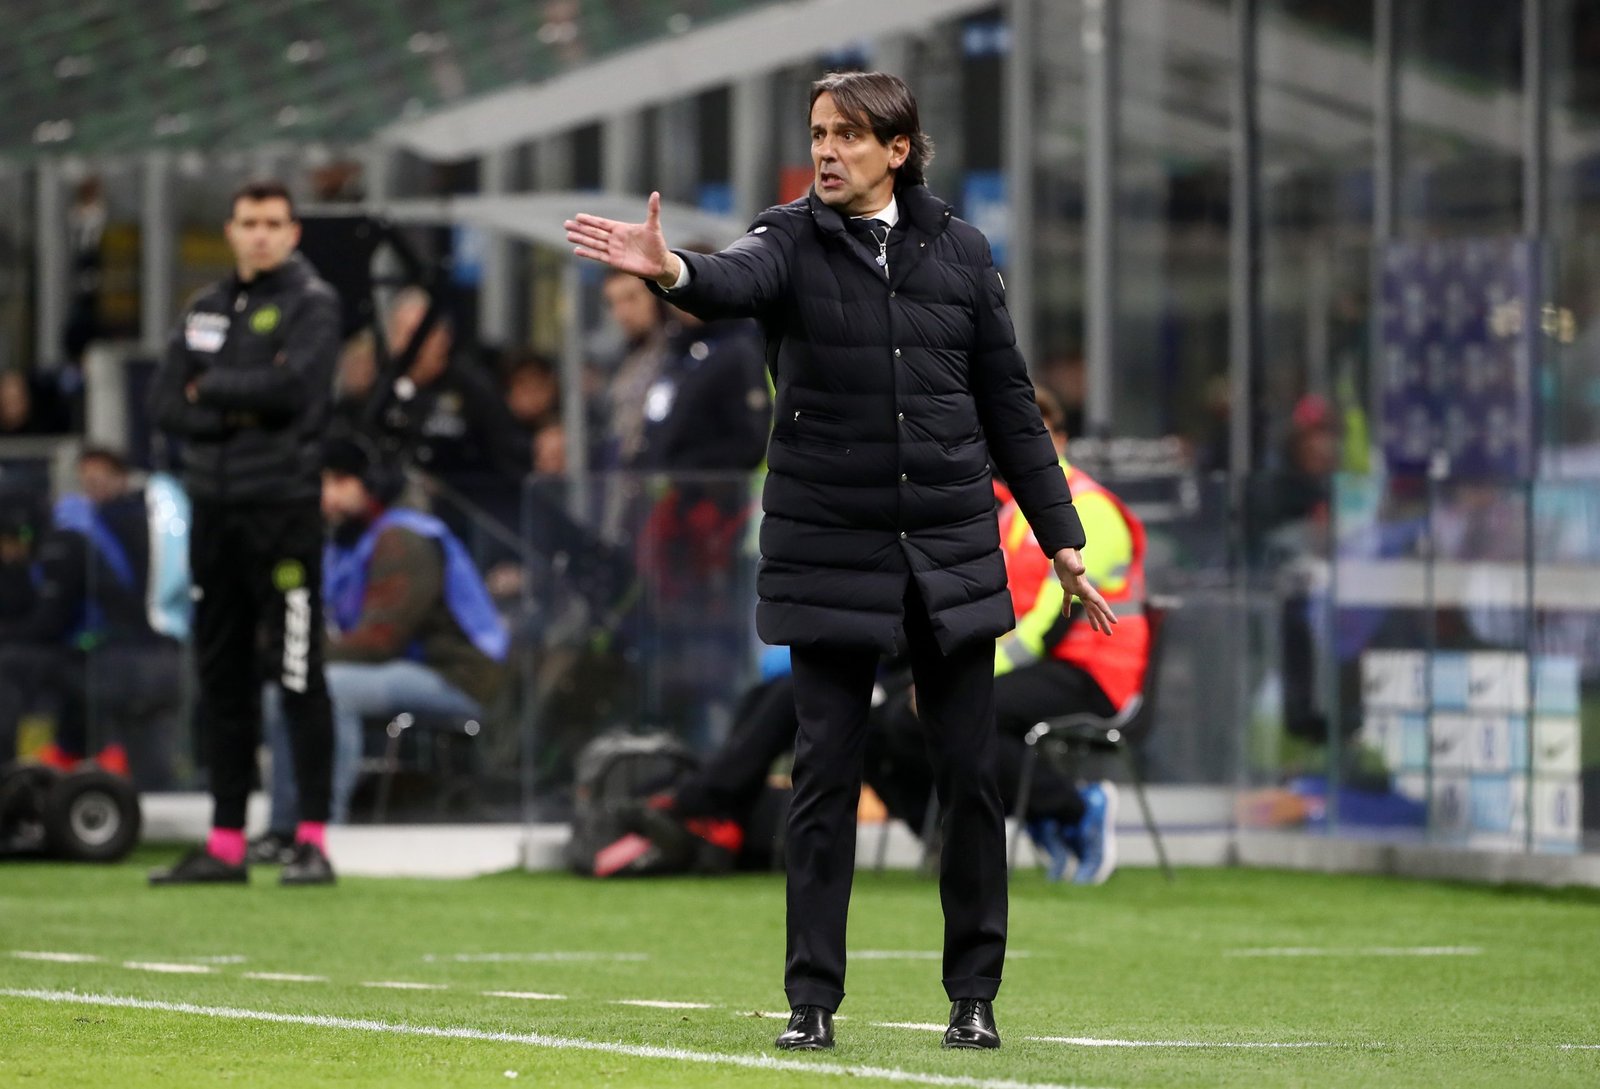 Simone Inzaghi in Inter-Parma di Coppa Italia